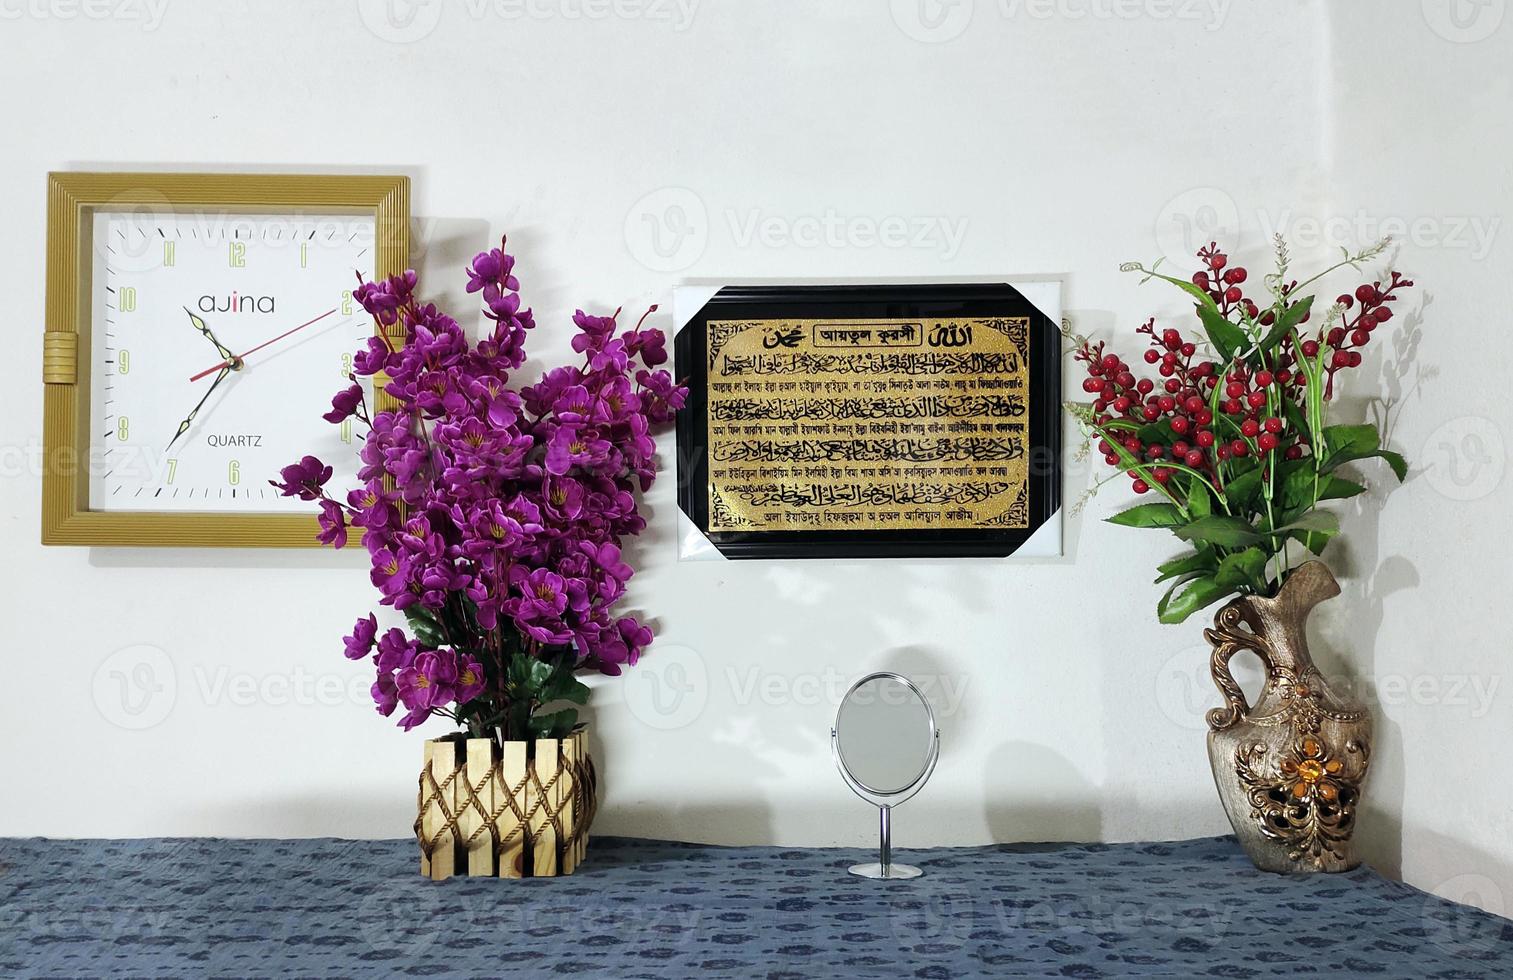 table avec fleurs dans le intérieur, une signe sur une mur lit le Nom de le endroit de le jour, mur l'horloge rouge fleurs vert feuilles violet photo